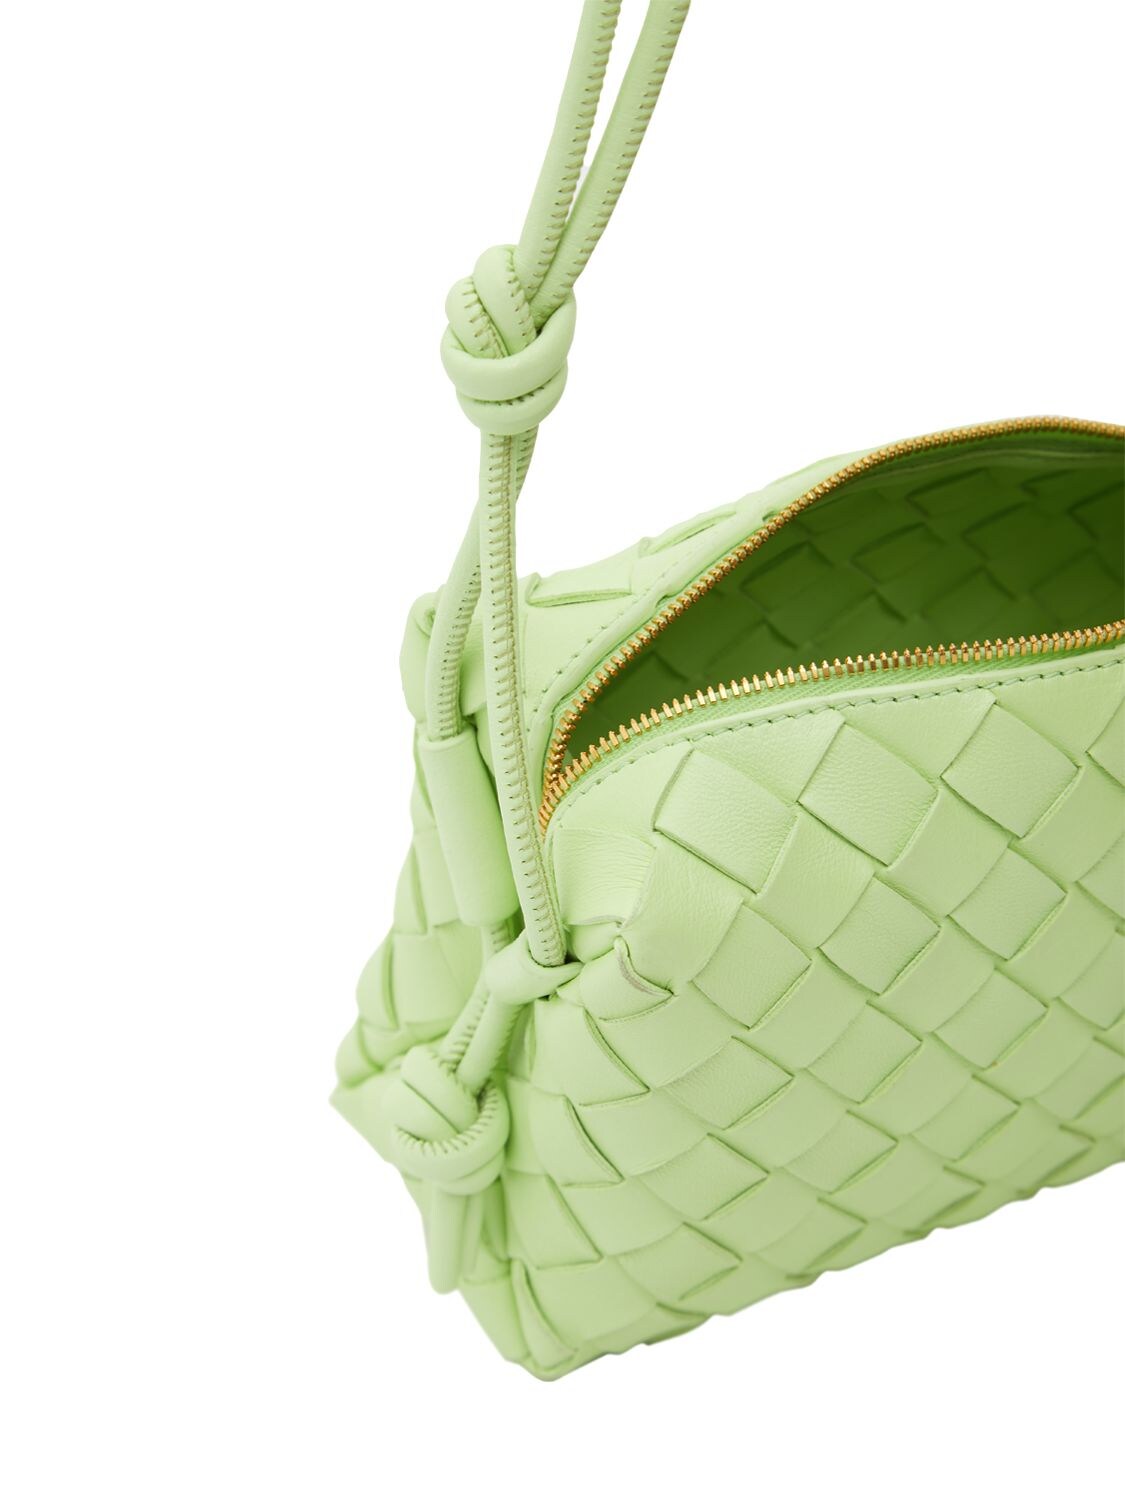 Bottega Veneta® Women's Mini Loop Camera Bag in Fennel. Shop online now.